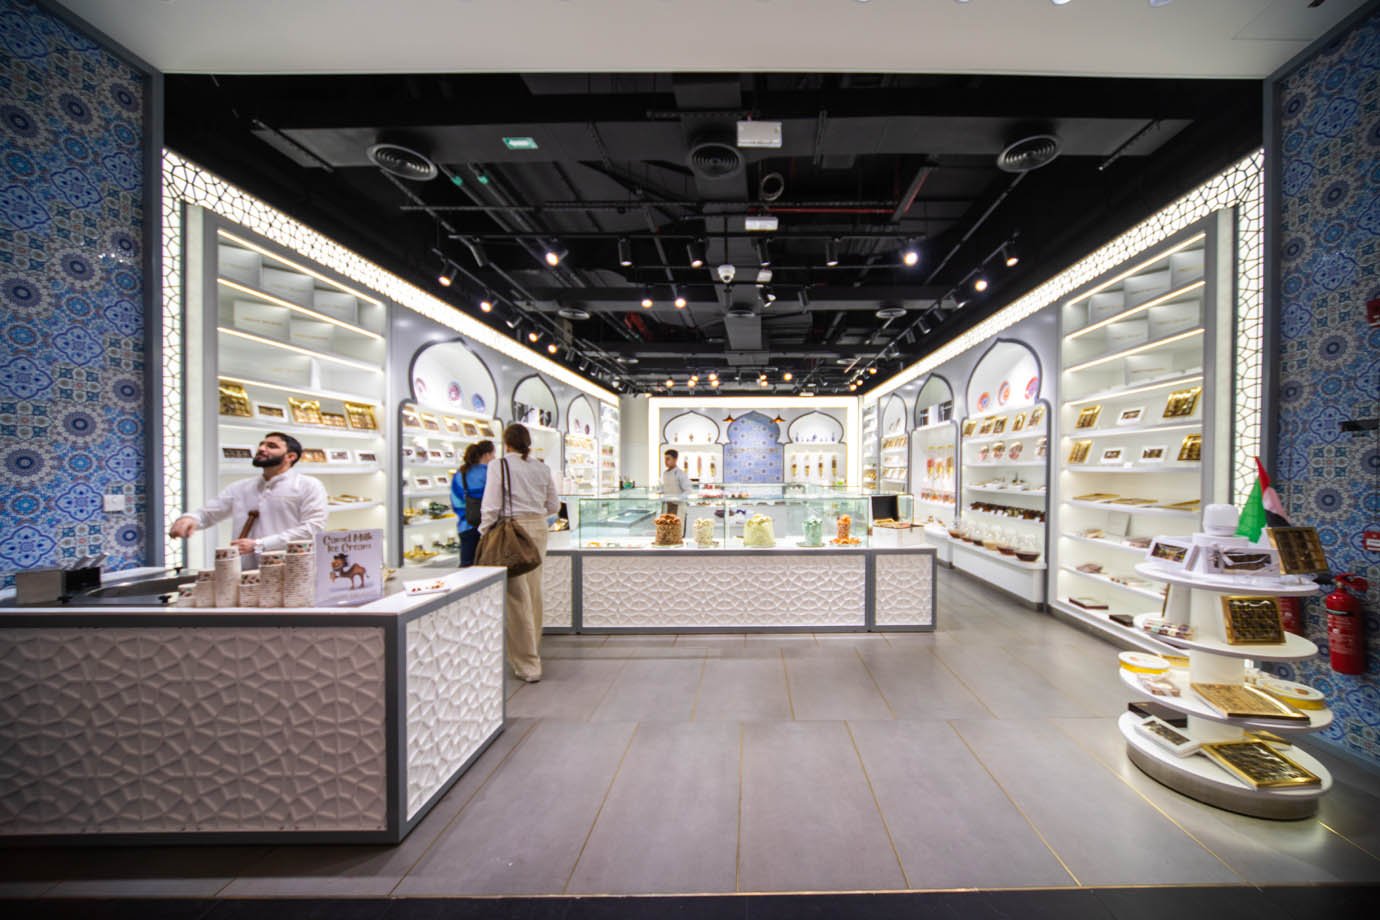 Abu Dhabi, lojas comerciais da Grande Mesquita Sheikh Zayed nos Emirados Ararabis

Foto: Leandro Fonseca
Data: 07/12/2023